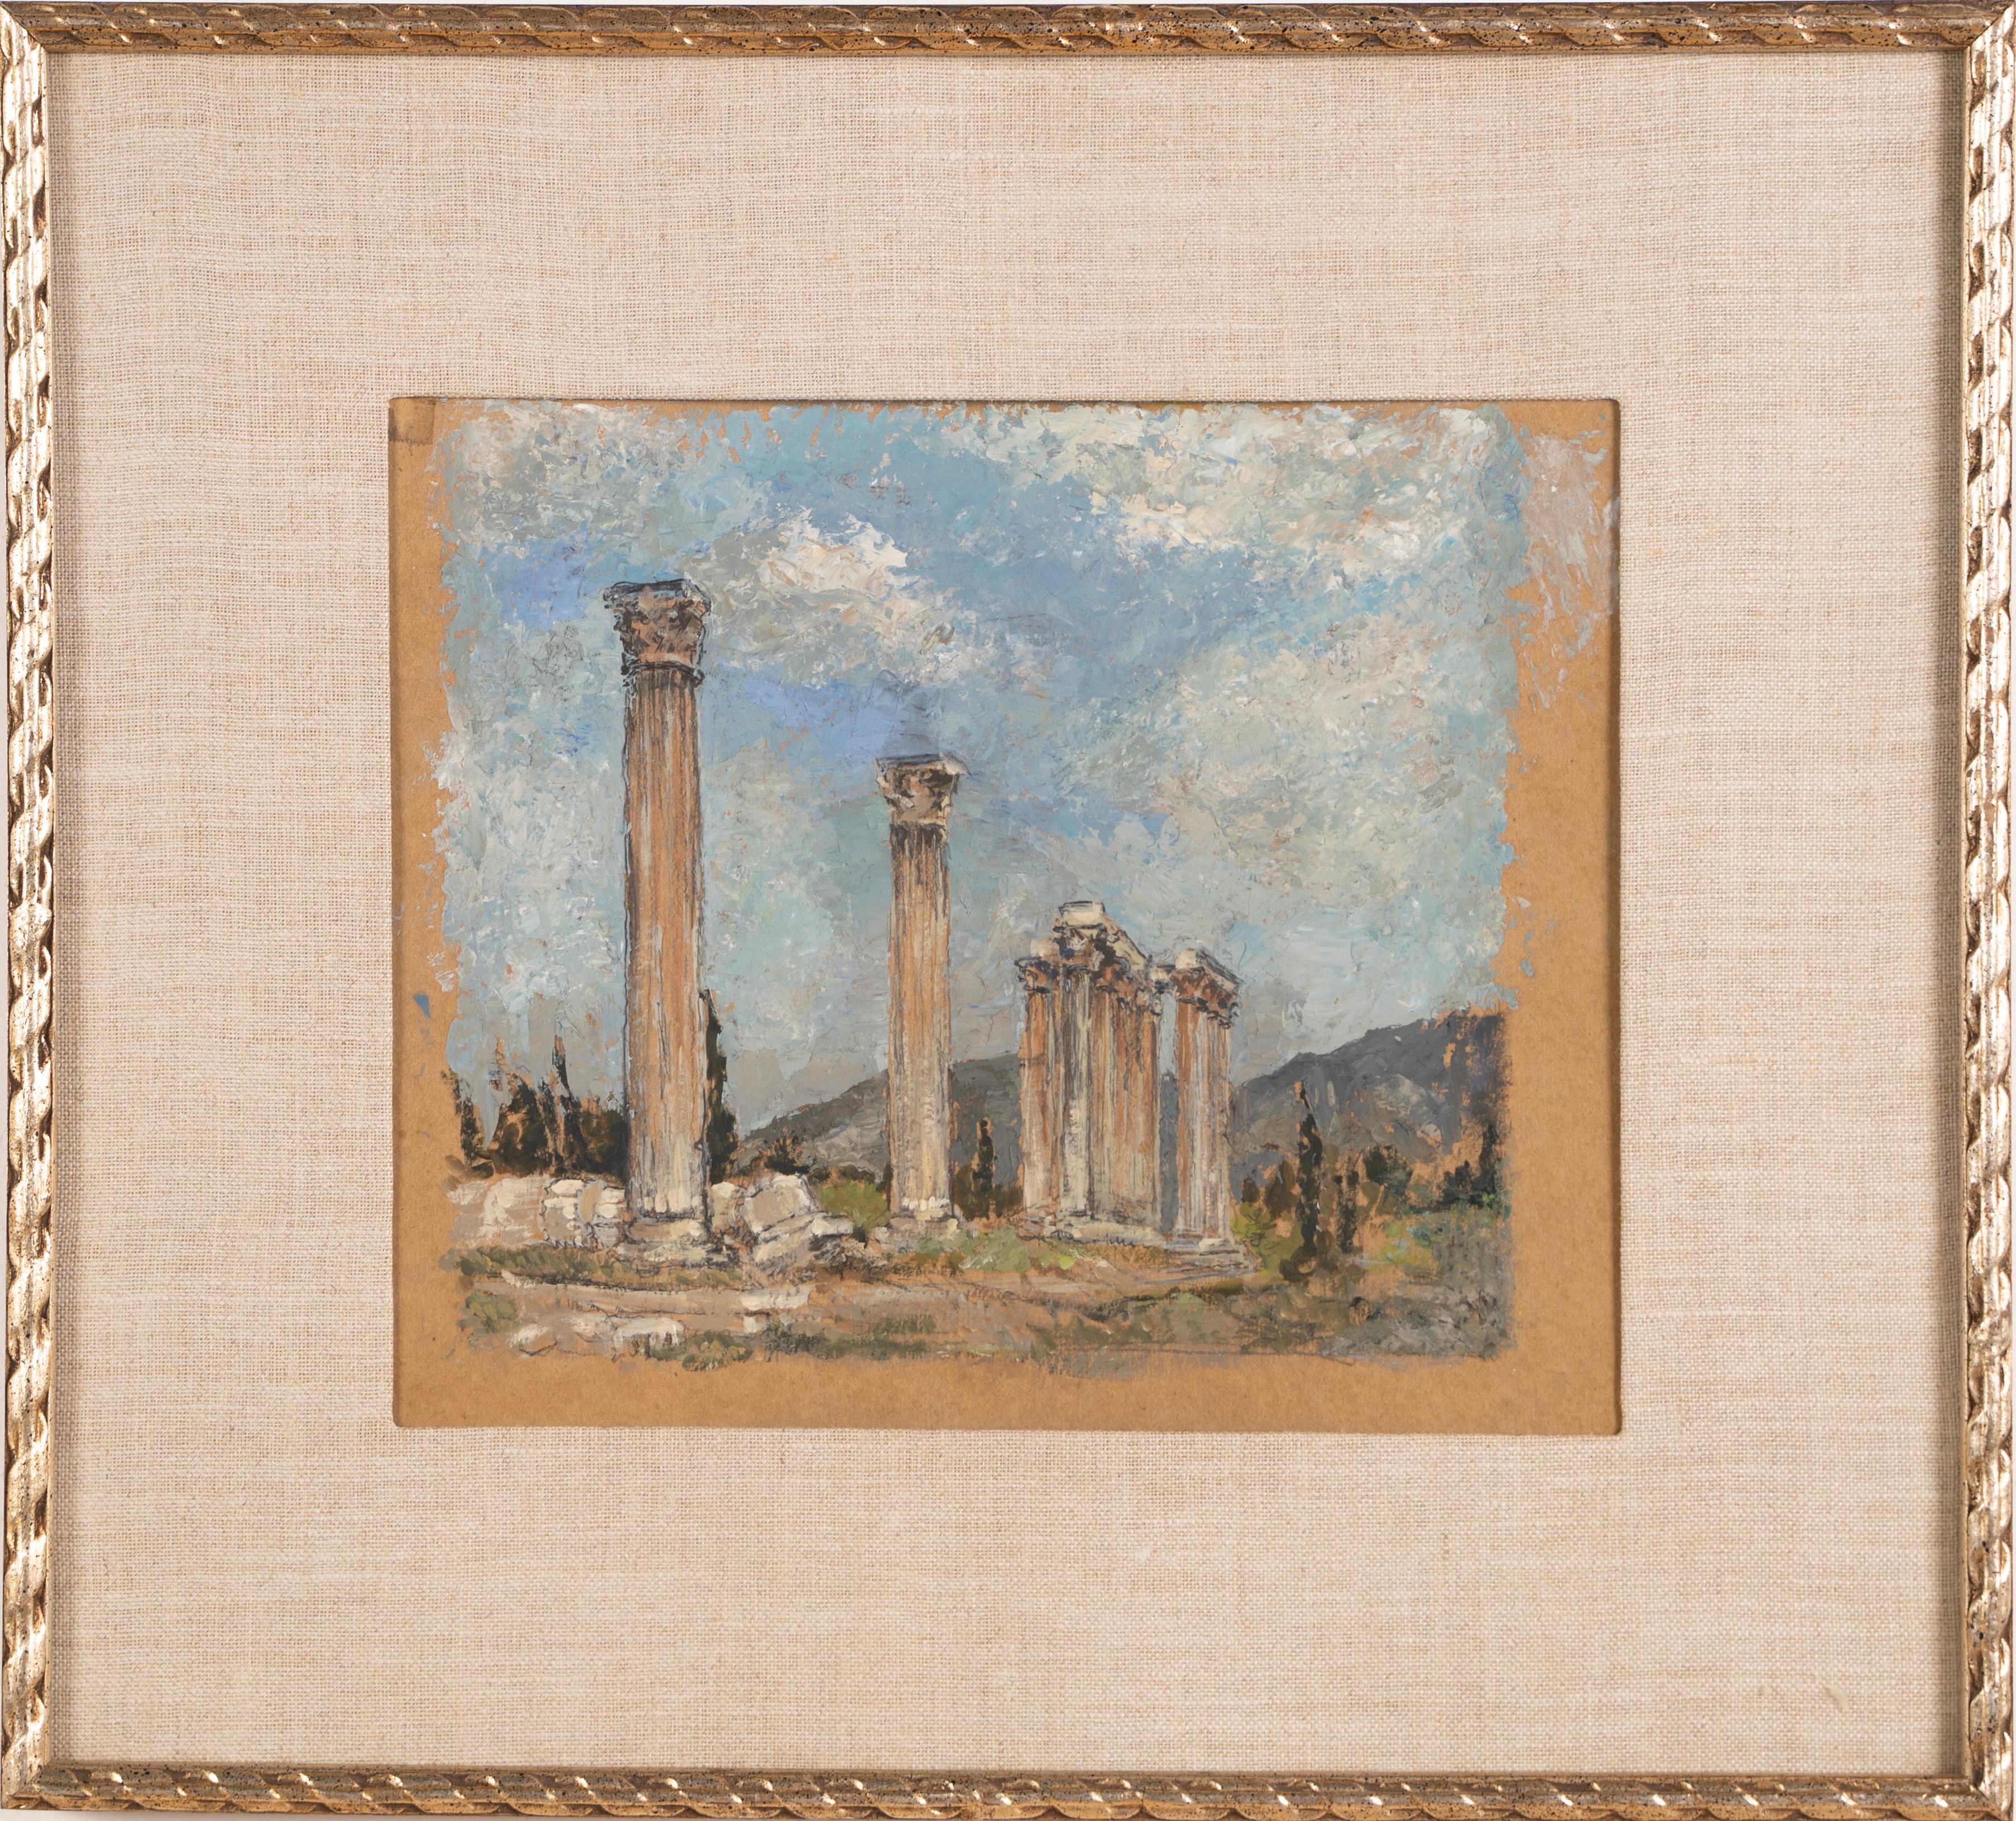 Landscape Painting Ruth Erb Hoffman - Ancienne peinture à l'huile de paysage grec à colonnes originale, anciennes ruines de maîtres anciens signées